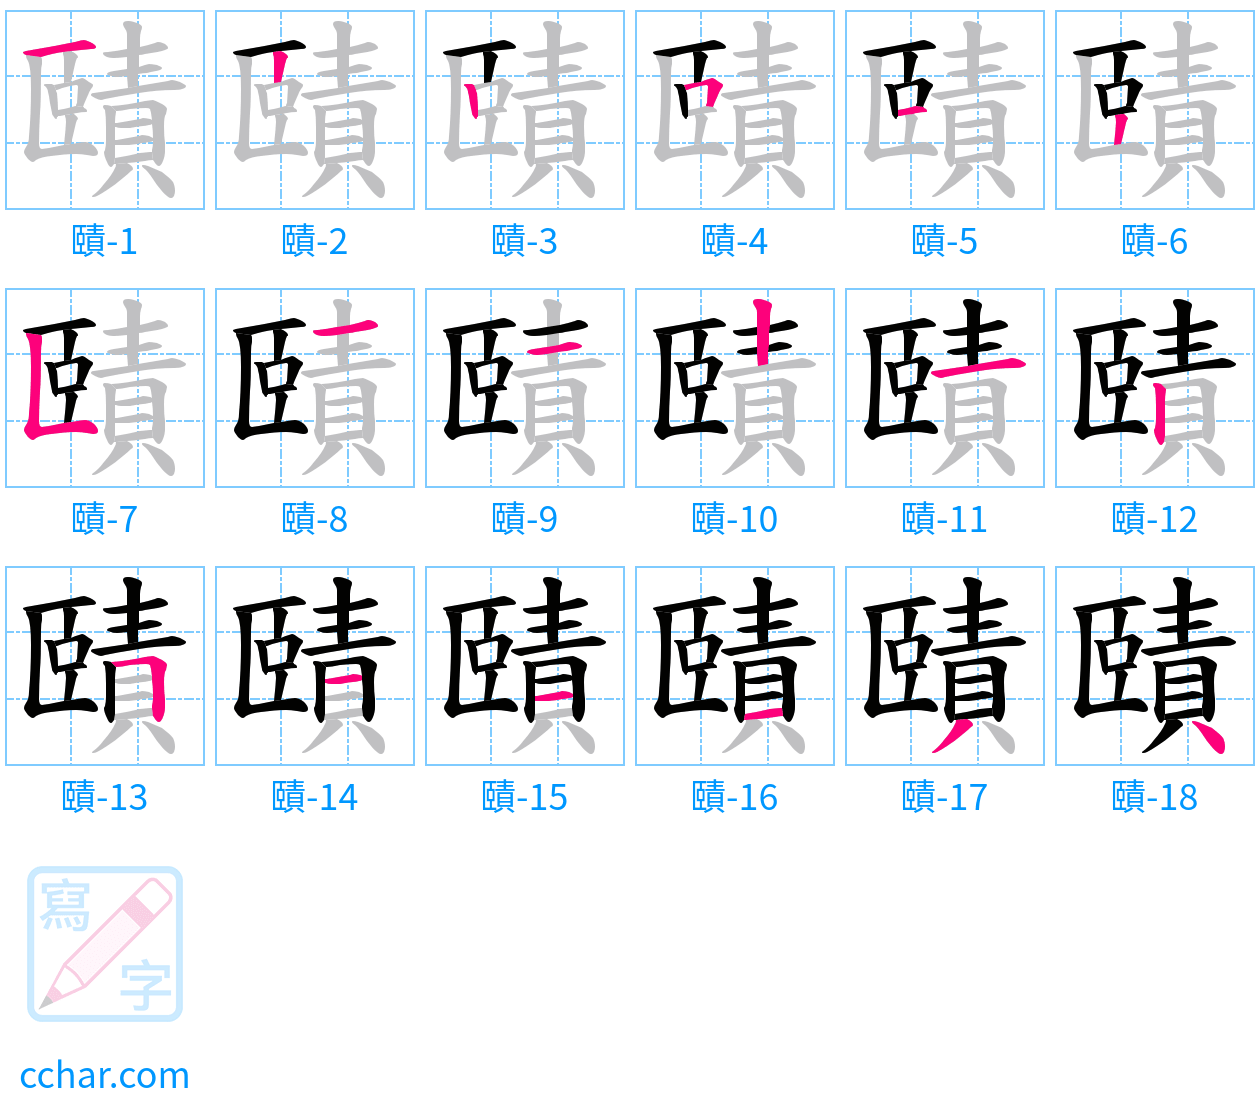 賾 stroke order step-by-step diagram